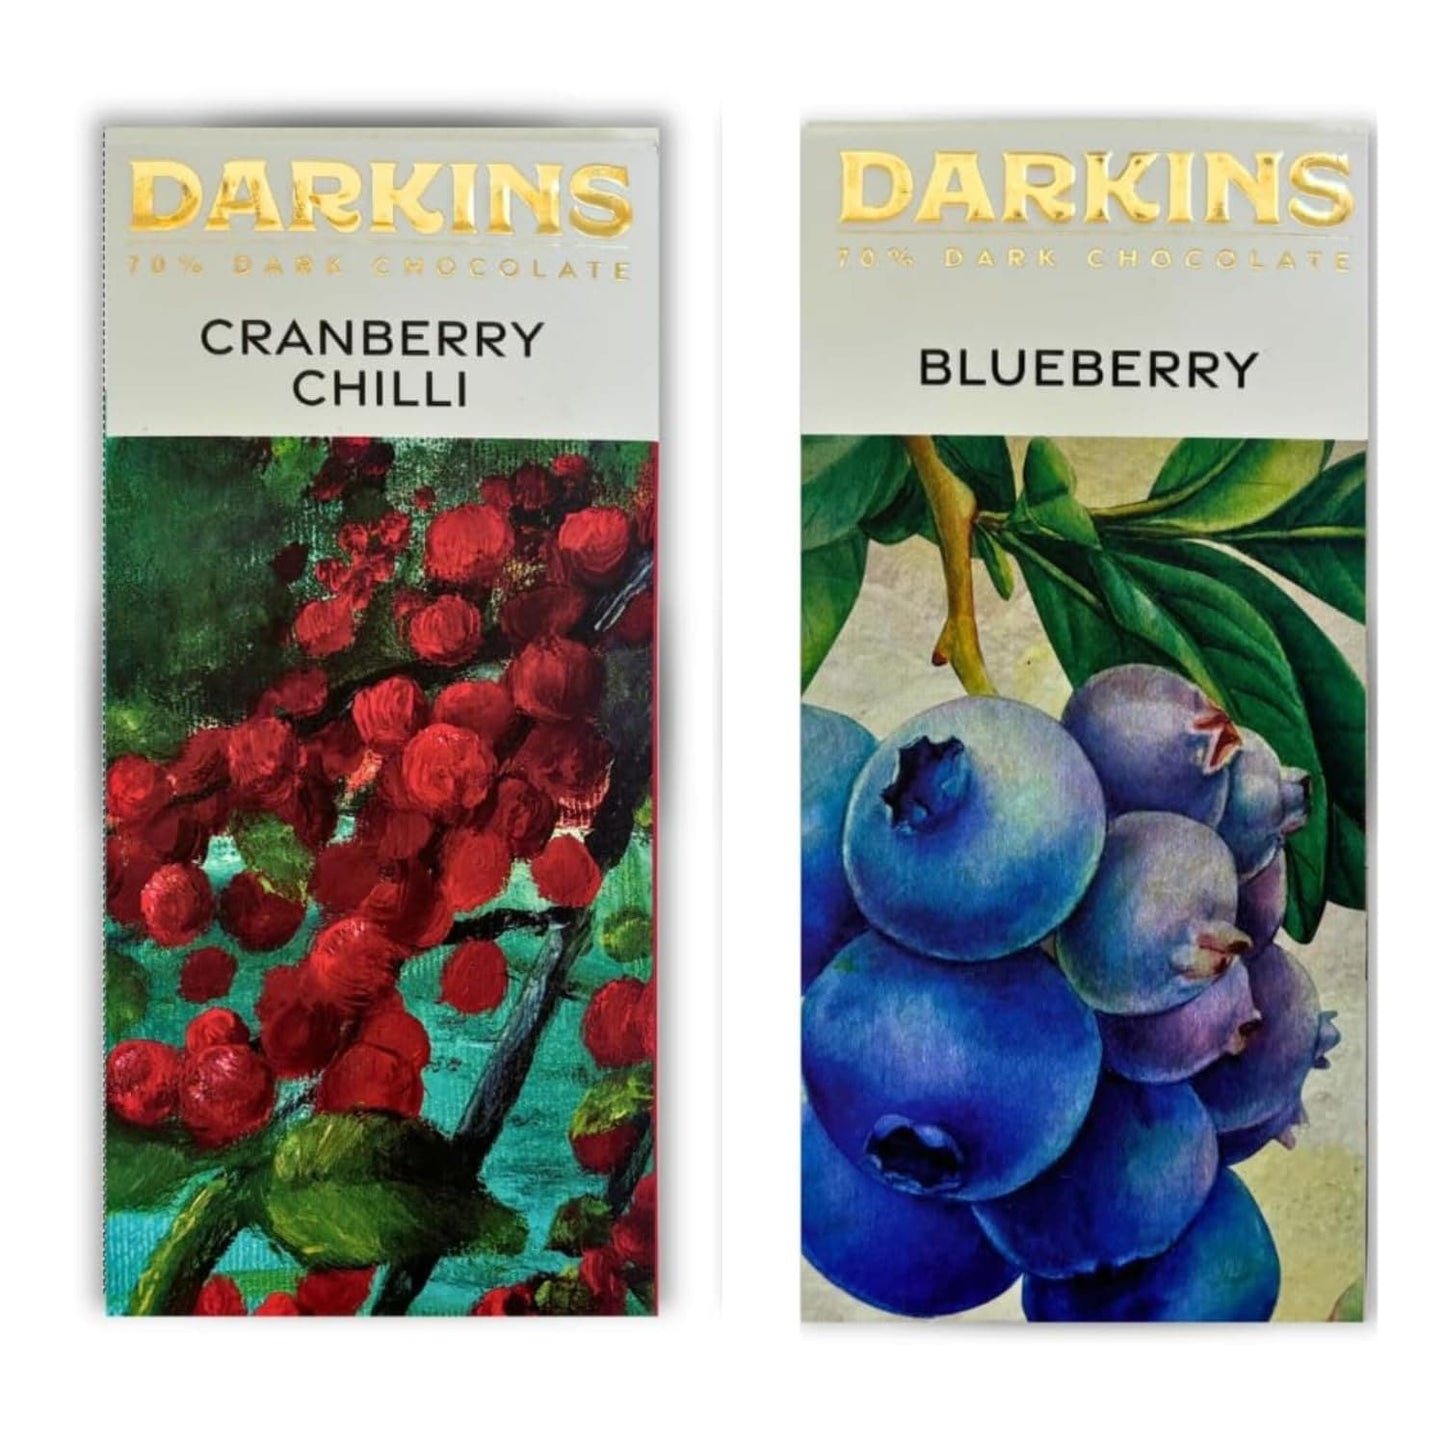 Darkins 70% Dark Chocolate With Blueberries | 70% Dark Chocolates Cranberry & Chilli (50g Each Pack of 4)